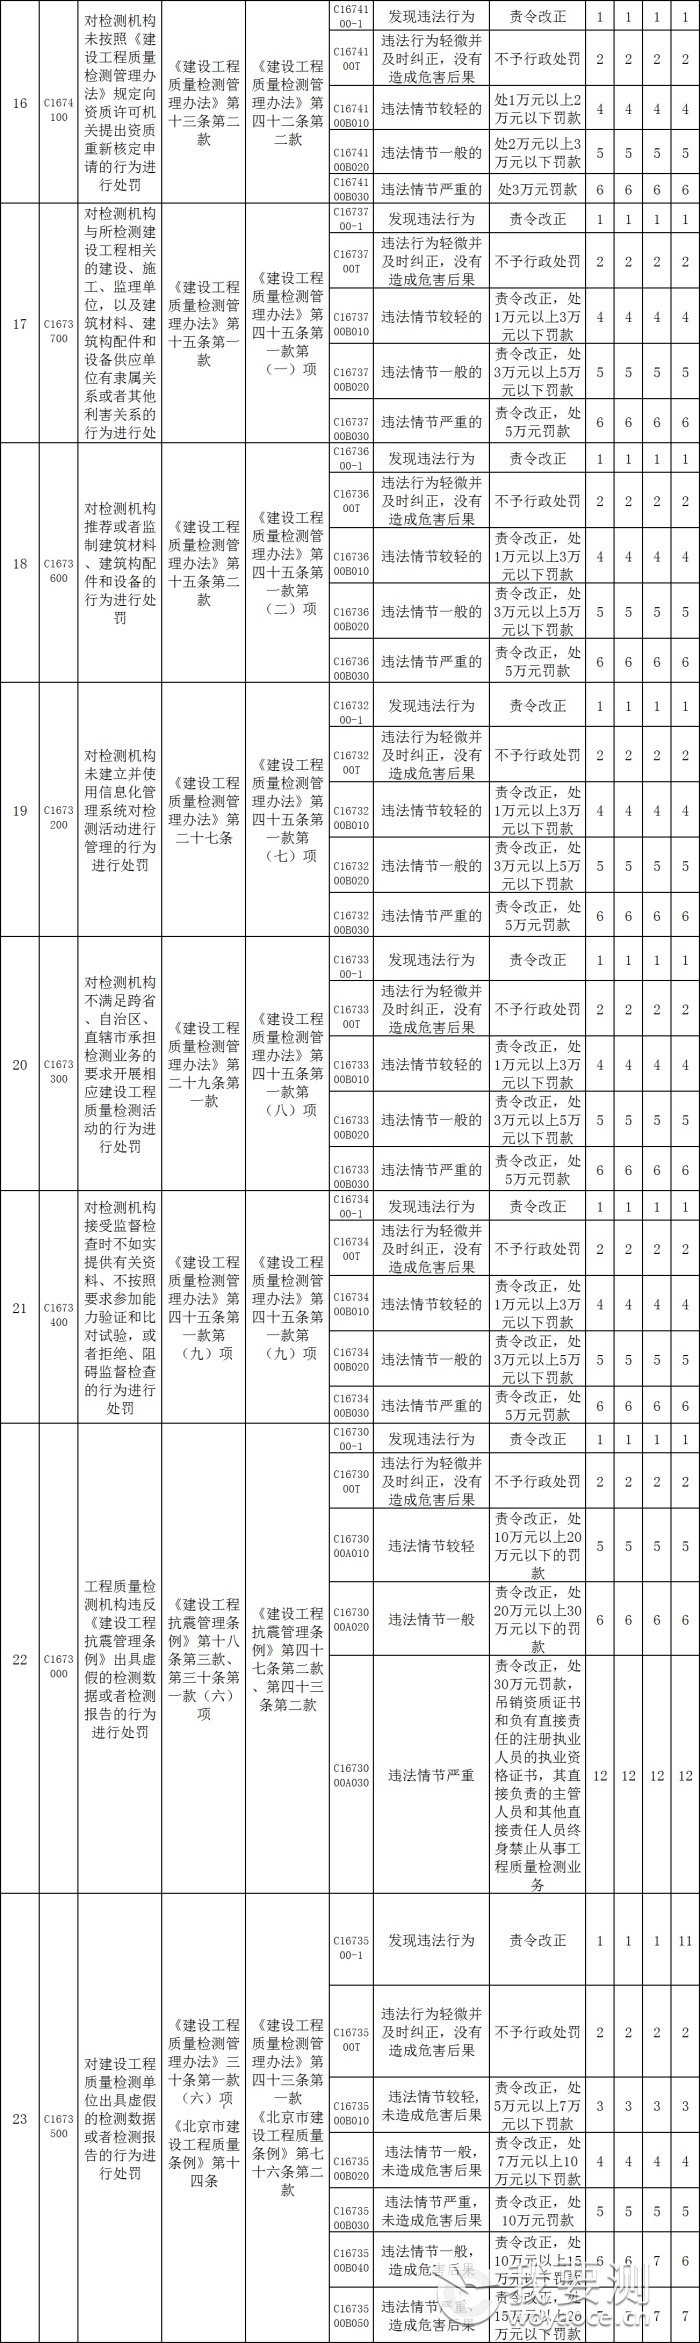 北京市建设工程质量检测机构及从业人员违法违规行为记分标准3.png